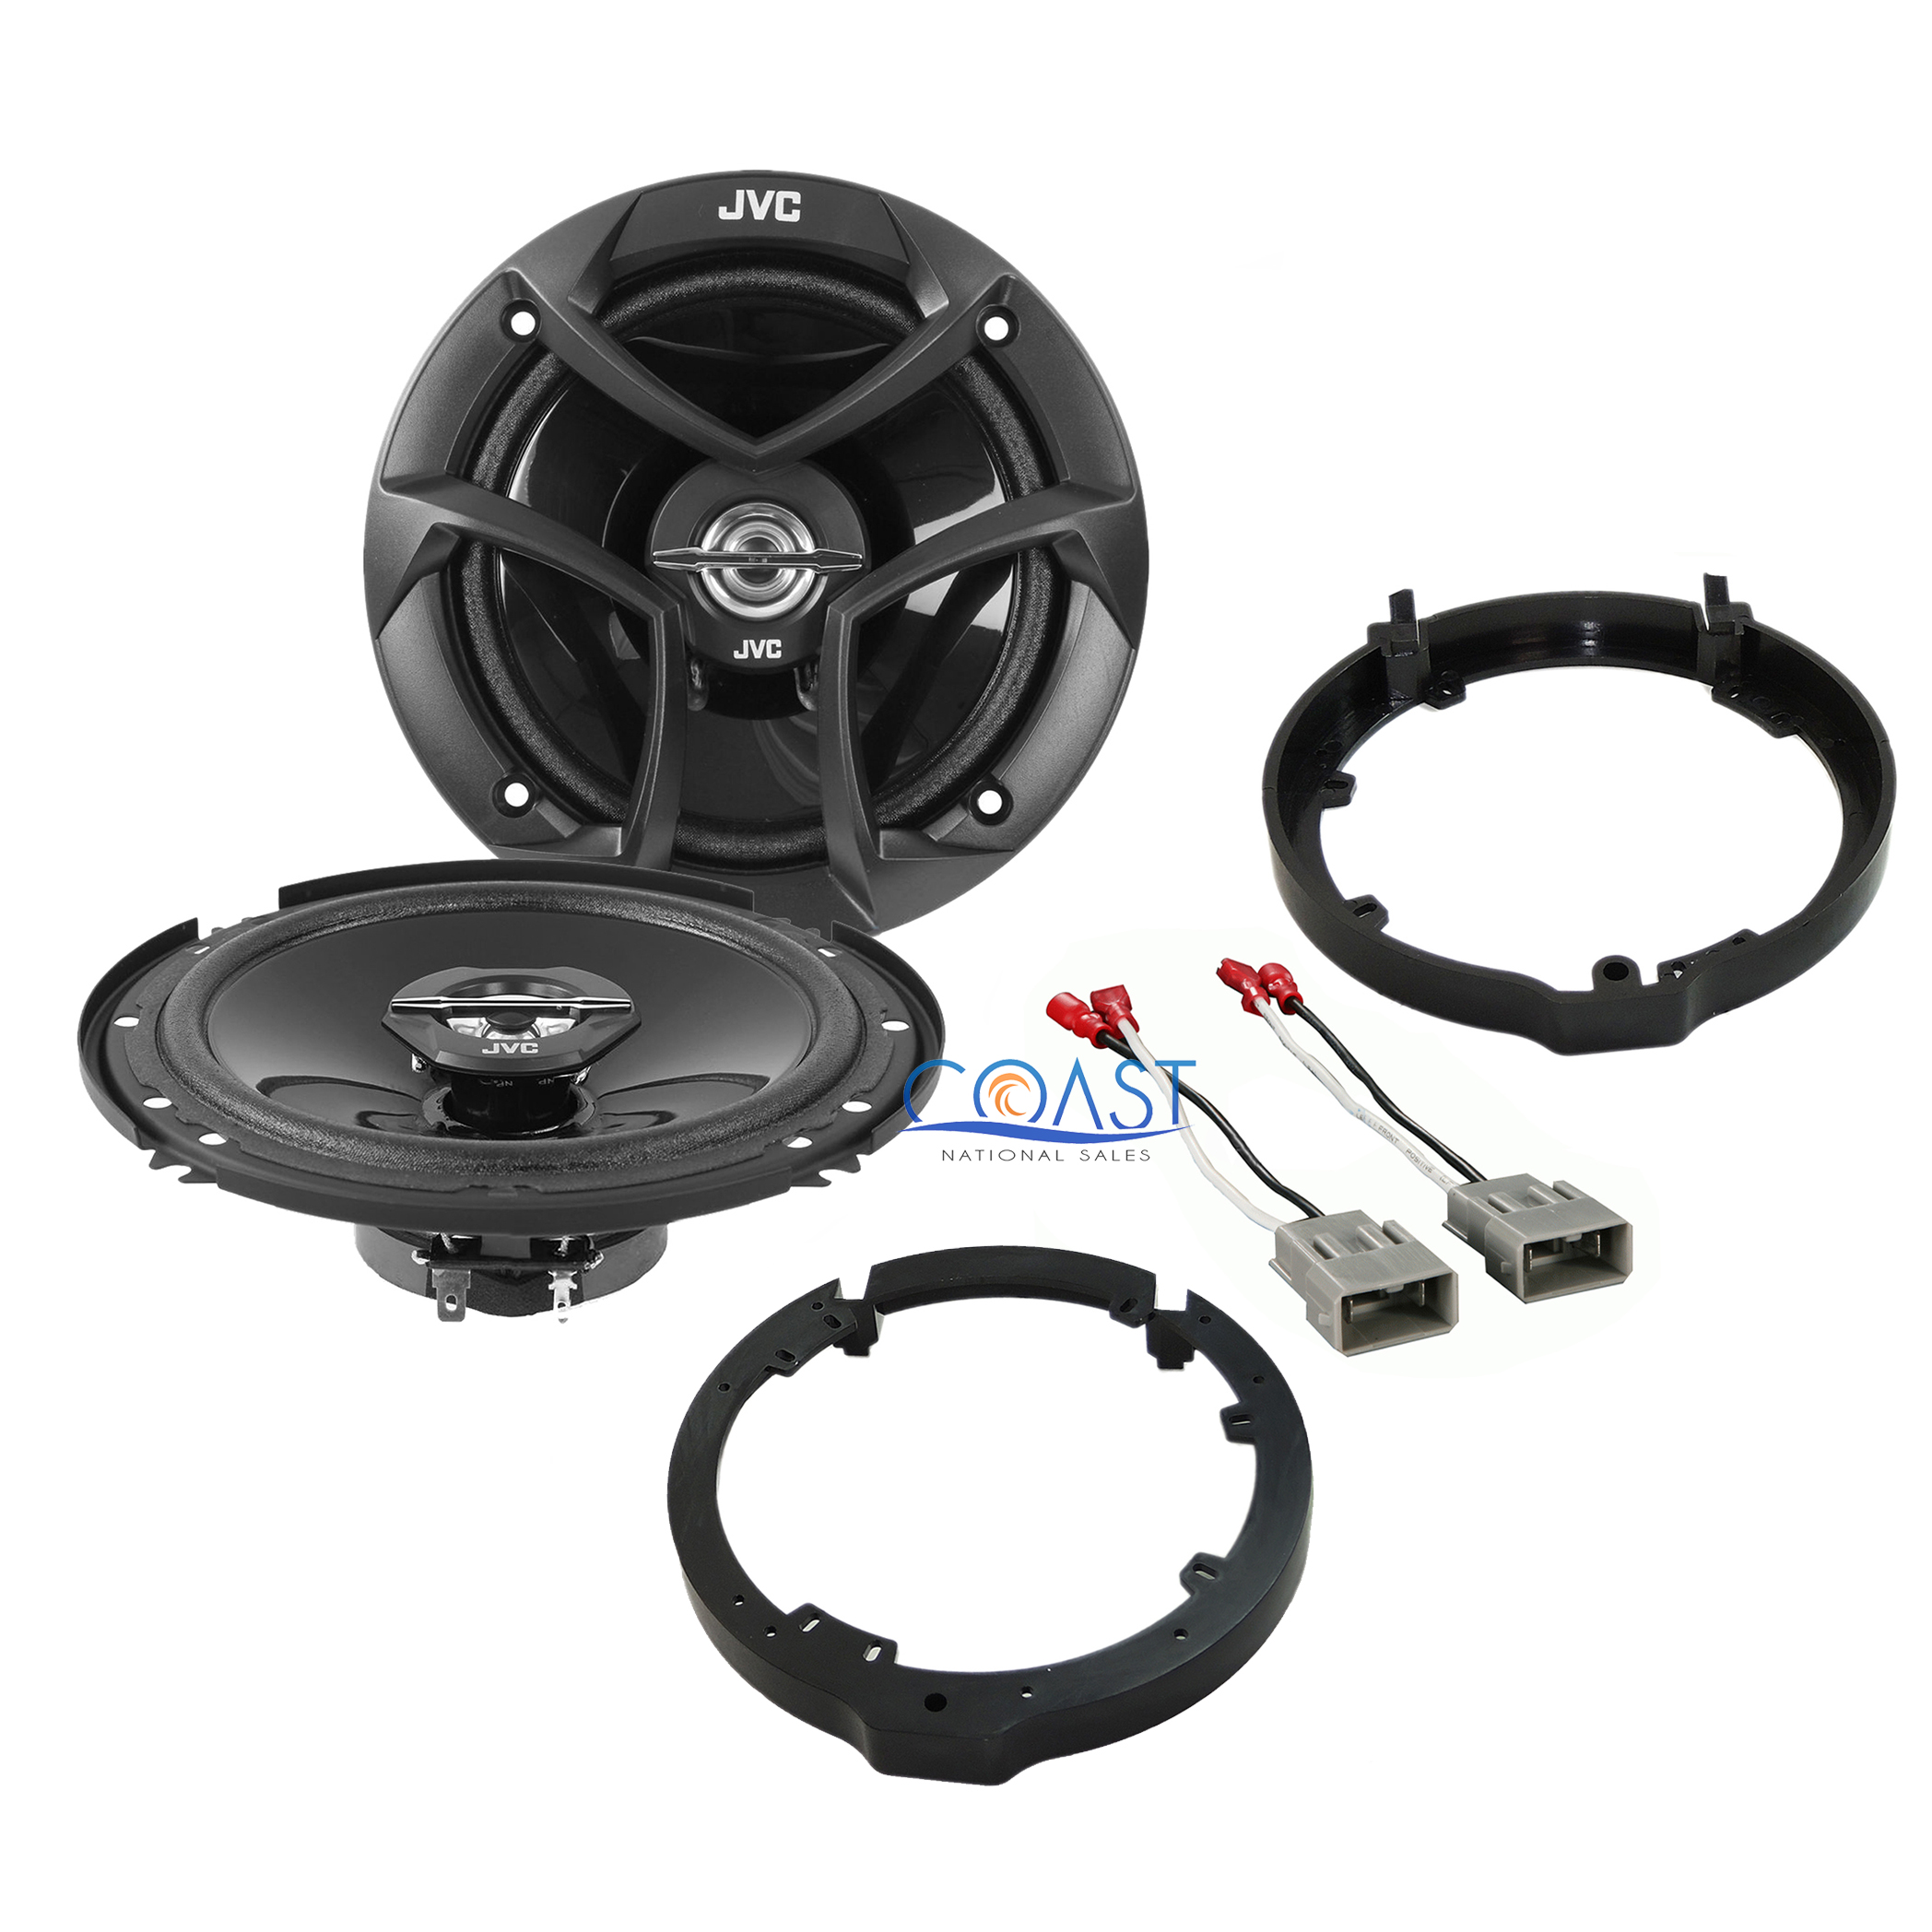 Honda/Acura Wiring Speaker Adapters from coastnationalsales.com